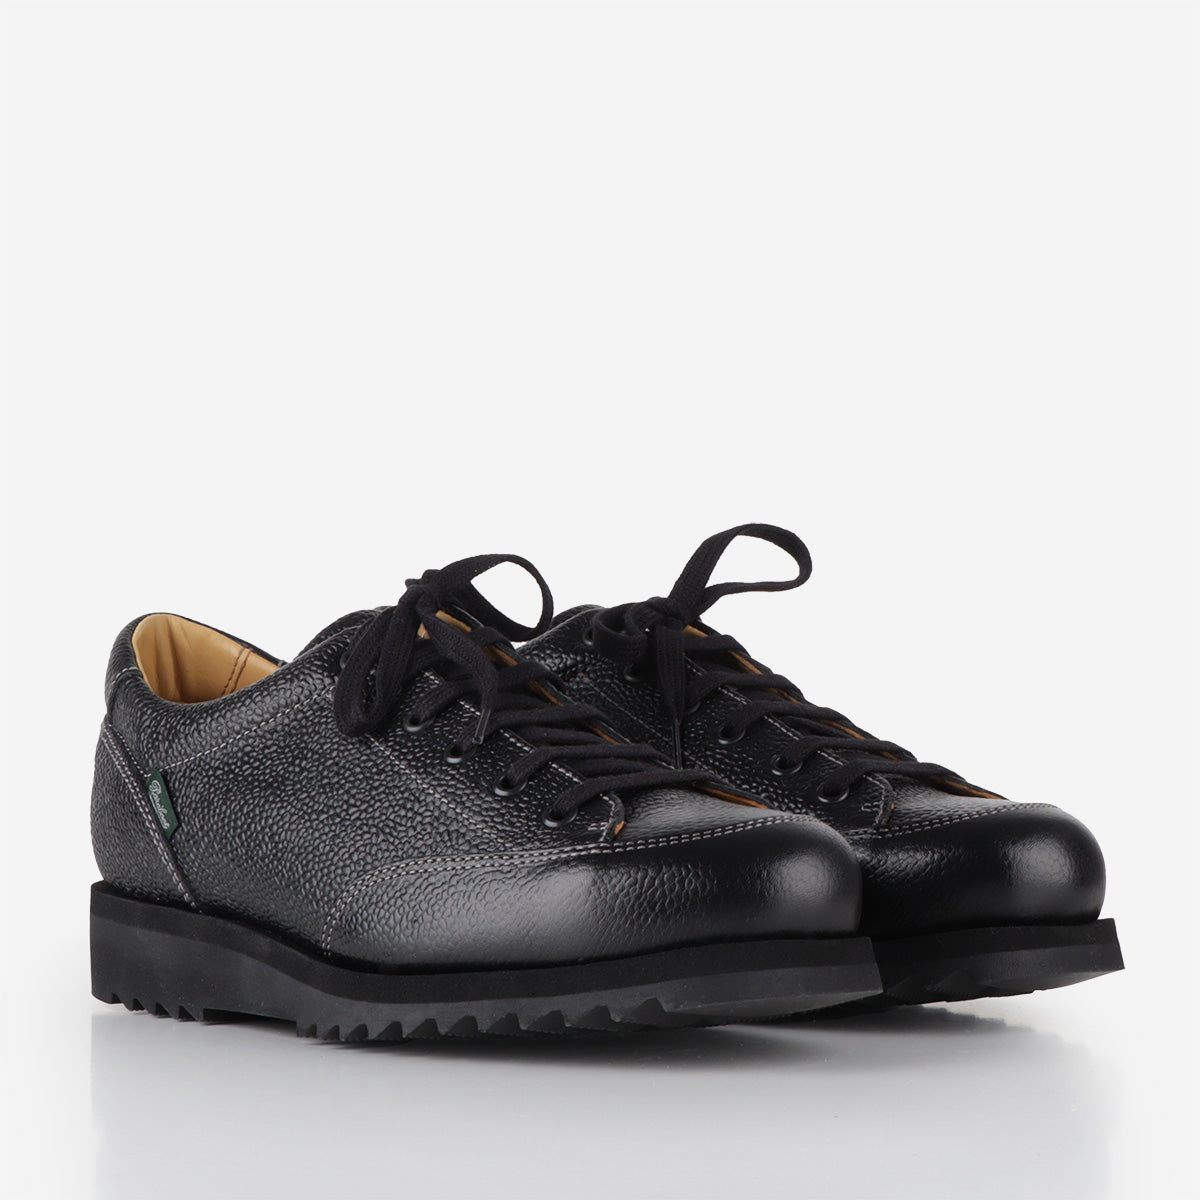 Paraboot Sierra Graine Shoes, Black, Detail Shot 2